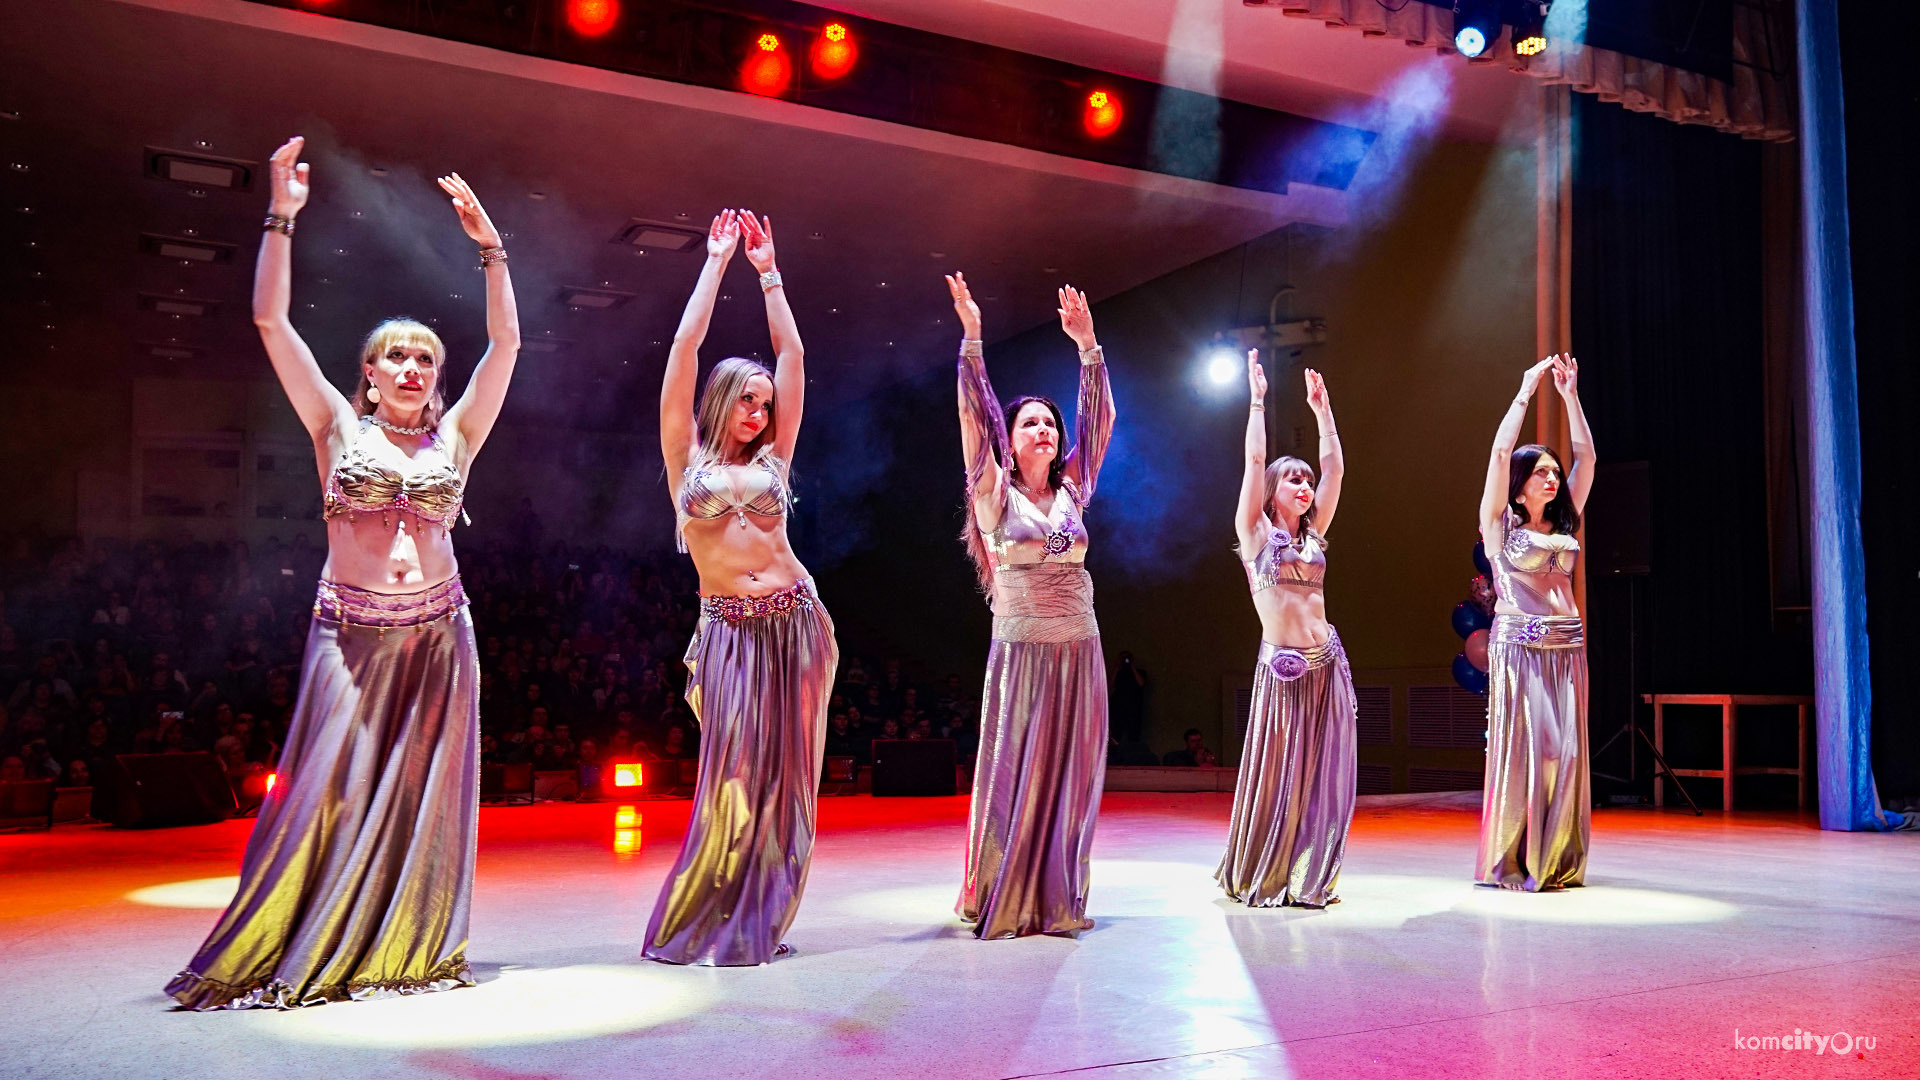 Концерт «Восточный калейдоскоп» подарил комсомольчанам танцевальное путешествие в Индию, Египет и Арабские страны